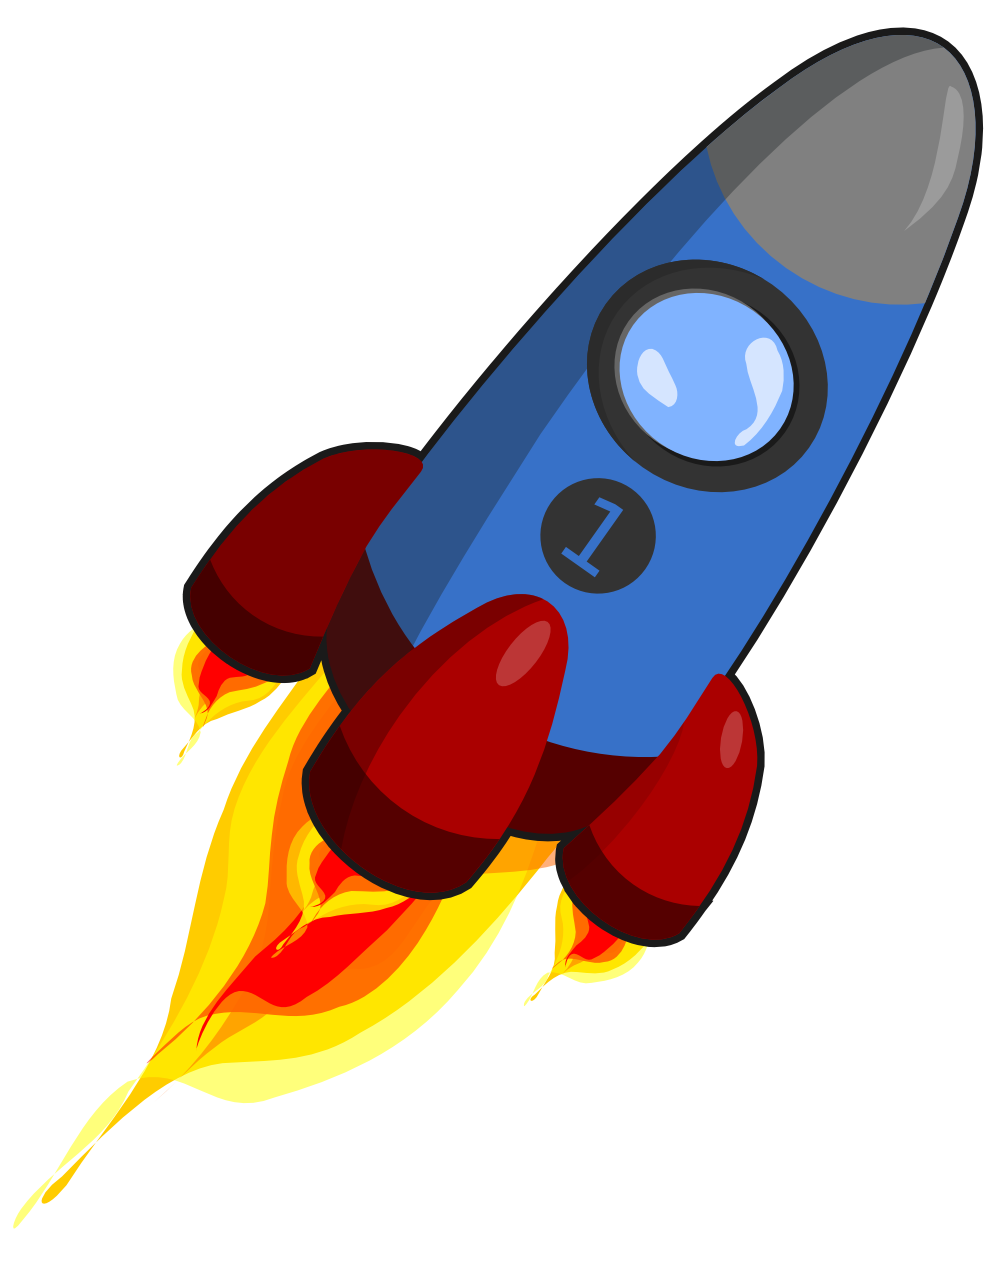 Rocket clipart 3 - Clipart Rocket